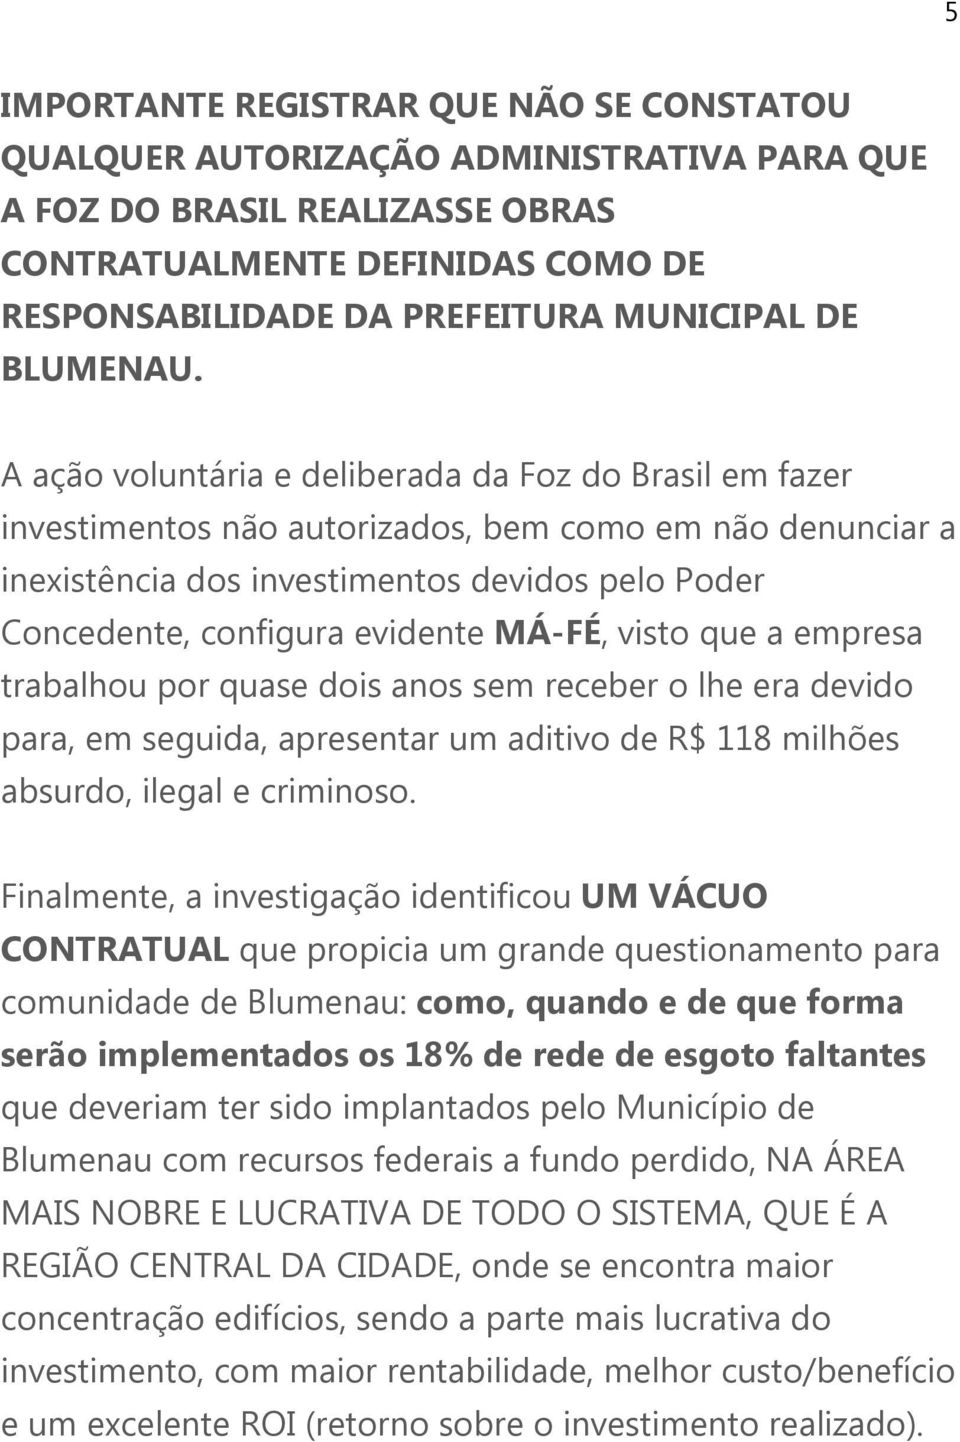 A ação voluntária e deliberada da Foz do Brasil em fazer investimentos não autorizados, bem como em não denunciar a inexistência dos investimentos devidos pelo Poder Concedente, configura evidente